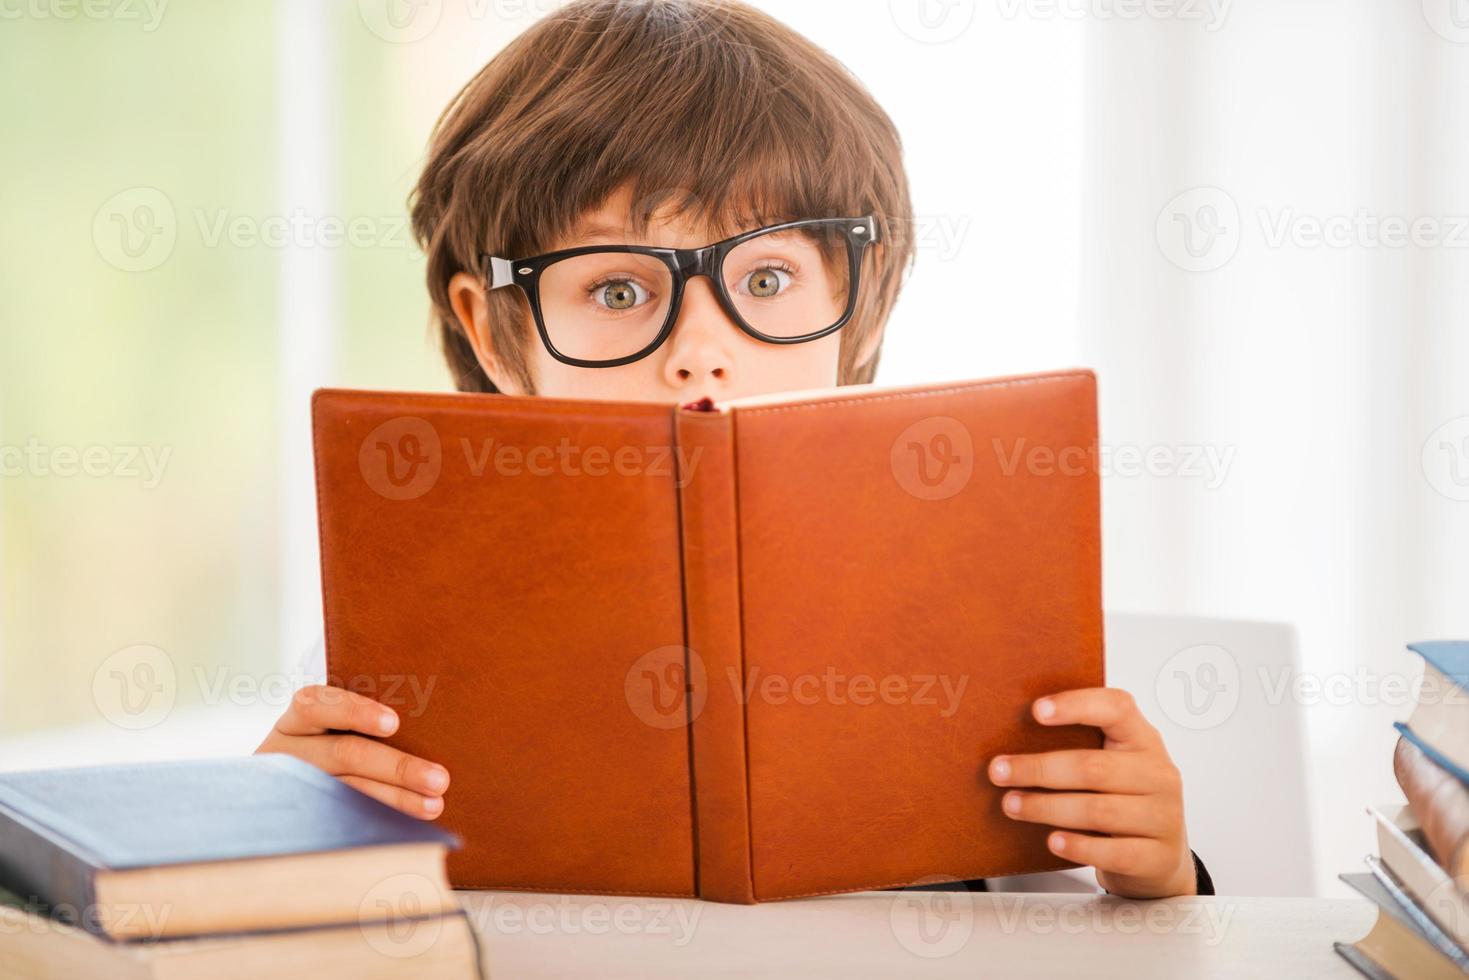 Fantastisk berättelse överraskad liten pojke läsning en bok medan Sammanträde på de tabell foto